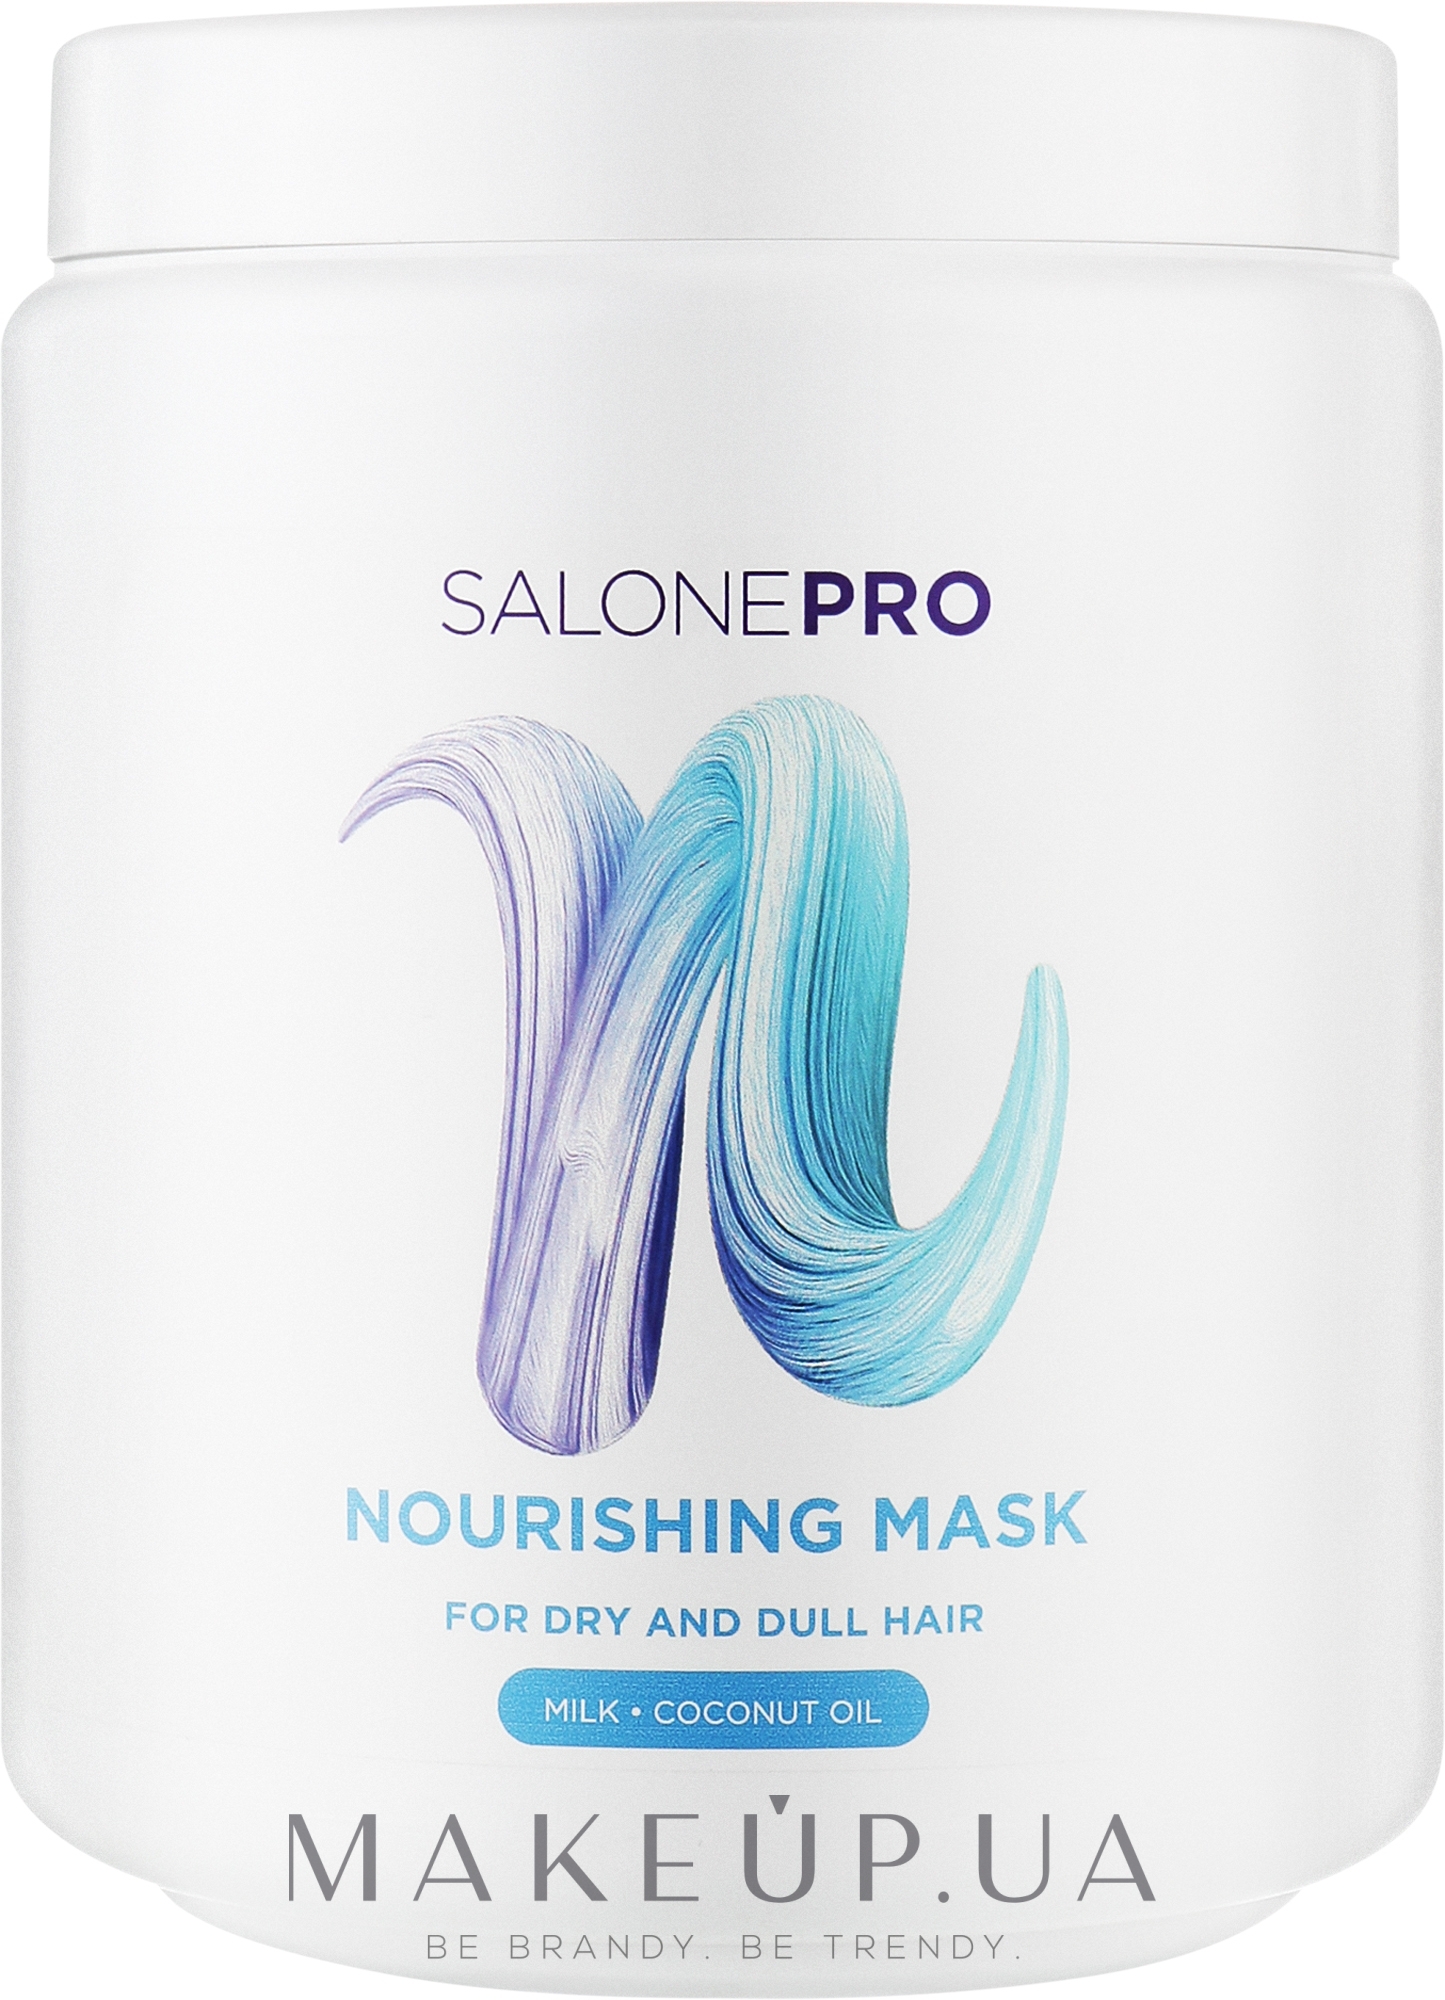 Питательная маска для сухих и тусклых волос - Unic Salone Pro Nourishing Mask — фото 1000ml